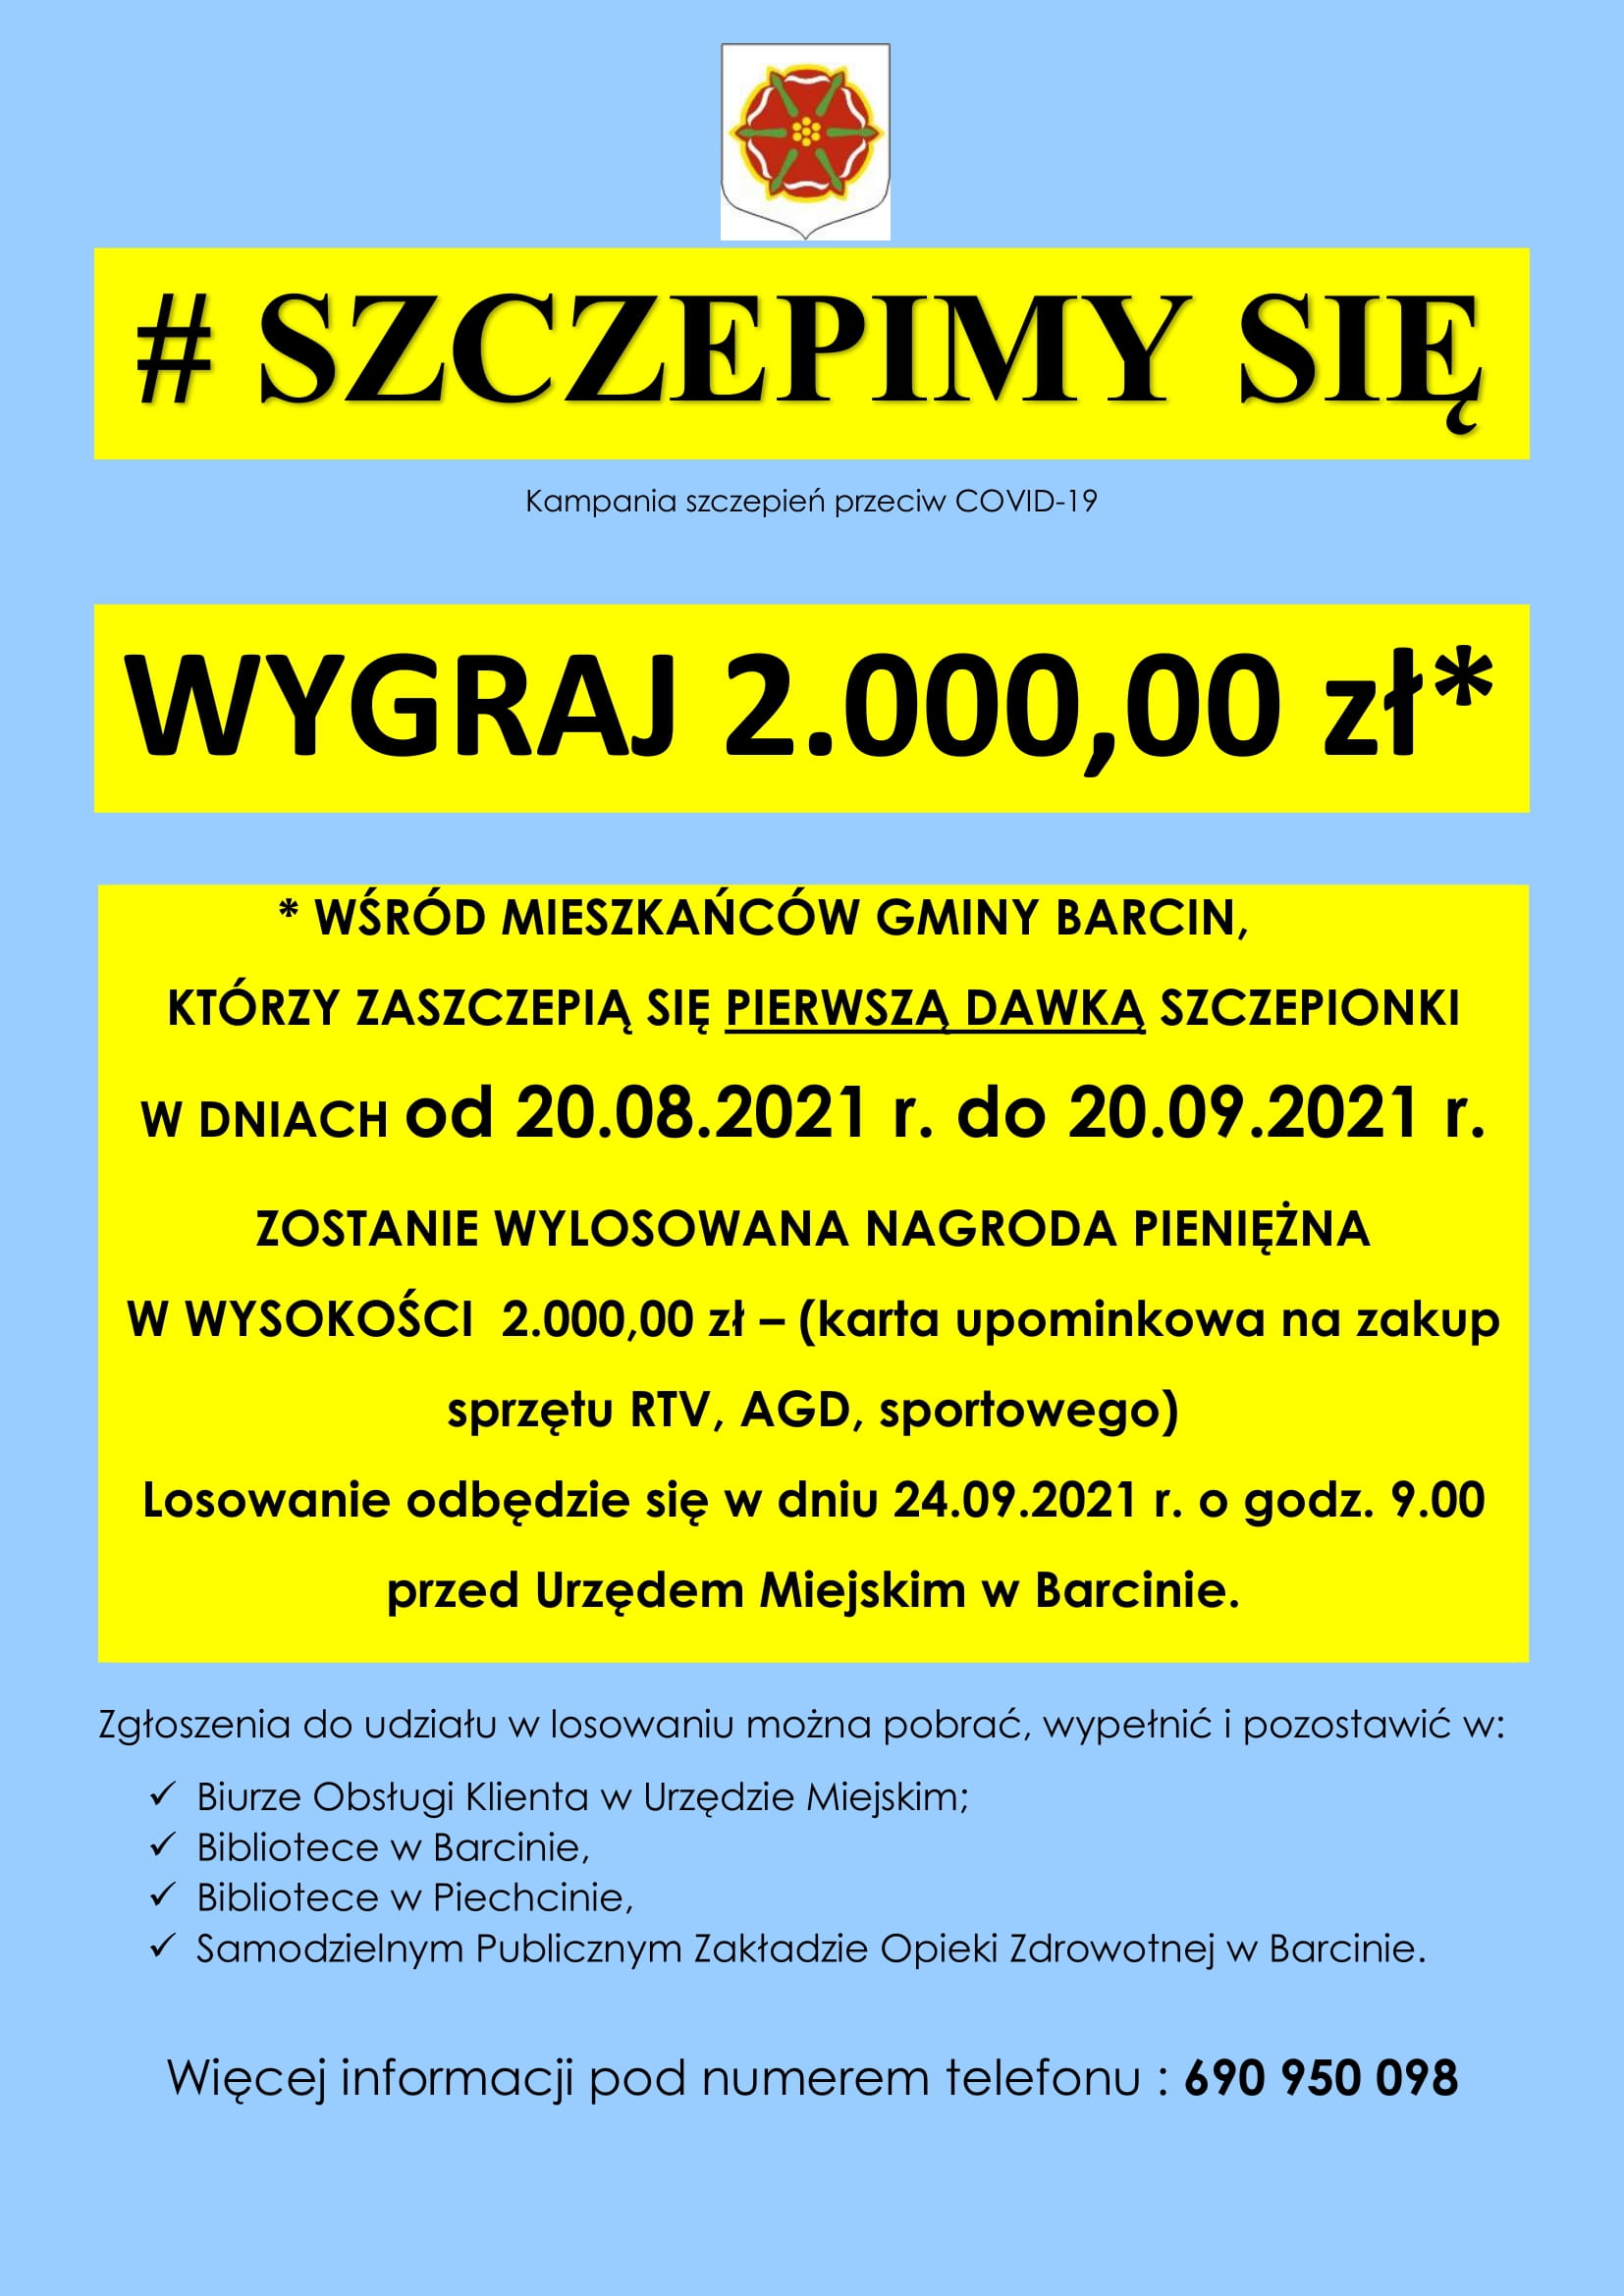 Plakat promujący szczepienia przeciwko COVID-19 w Gminie Barcin